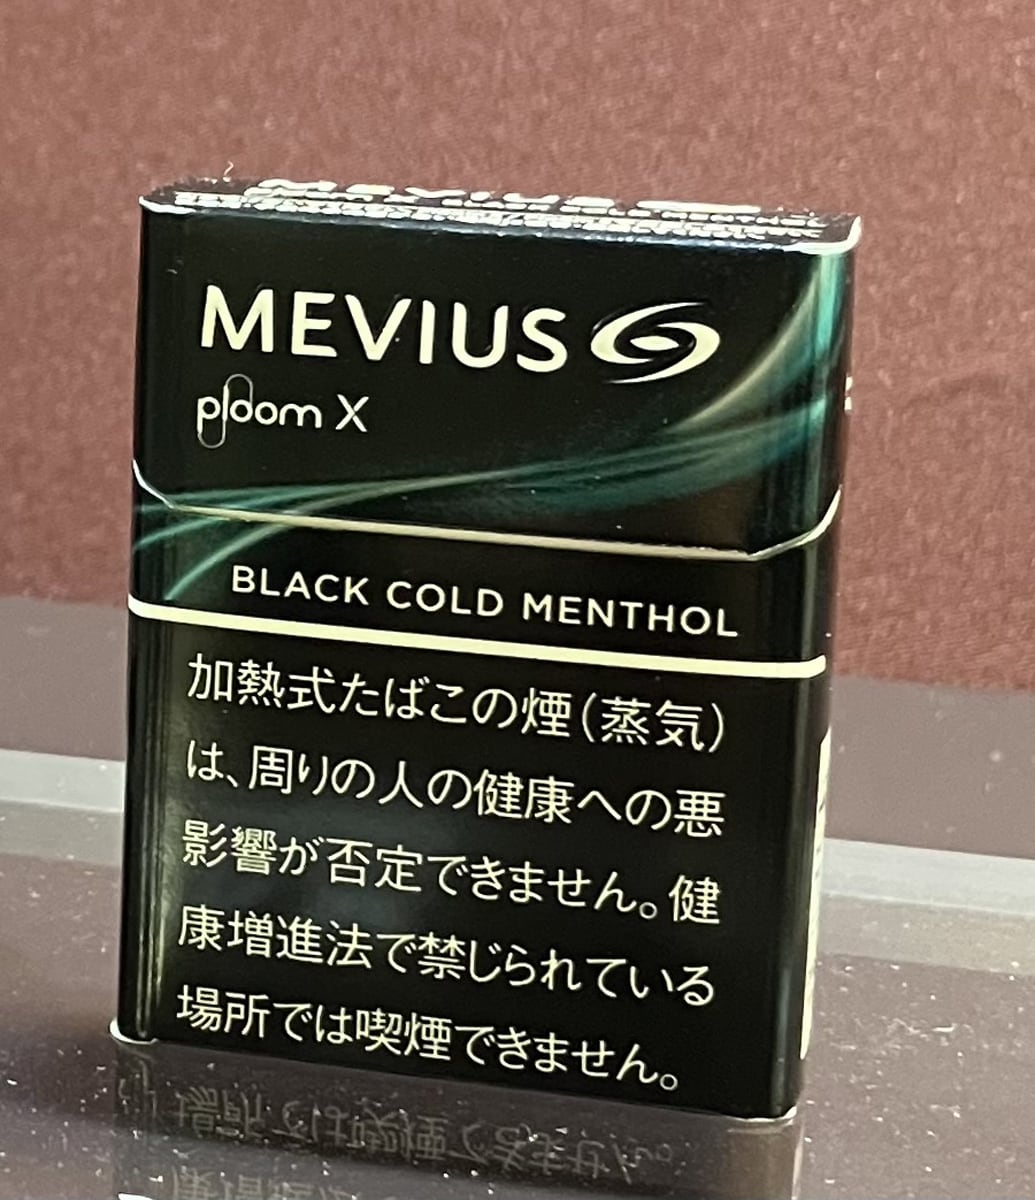 メビウス・ブラック・コールド・メンソール